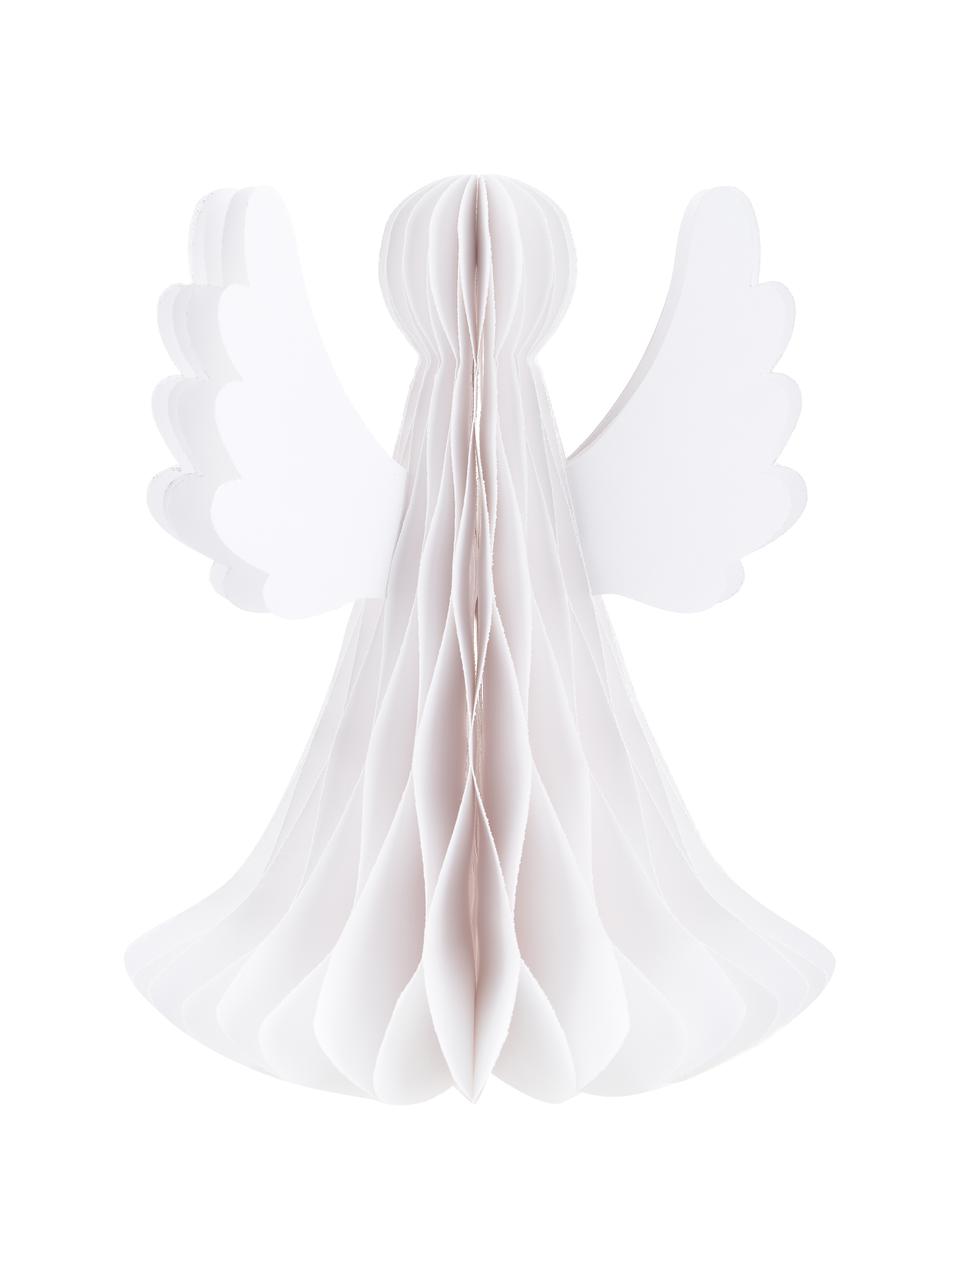 Skládaná dekorace Angel, Papír, Bílá, Ø 21 cm, V 27 cm